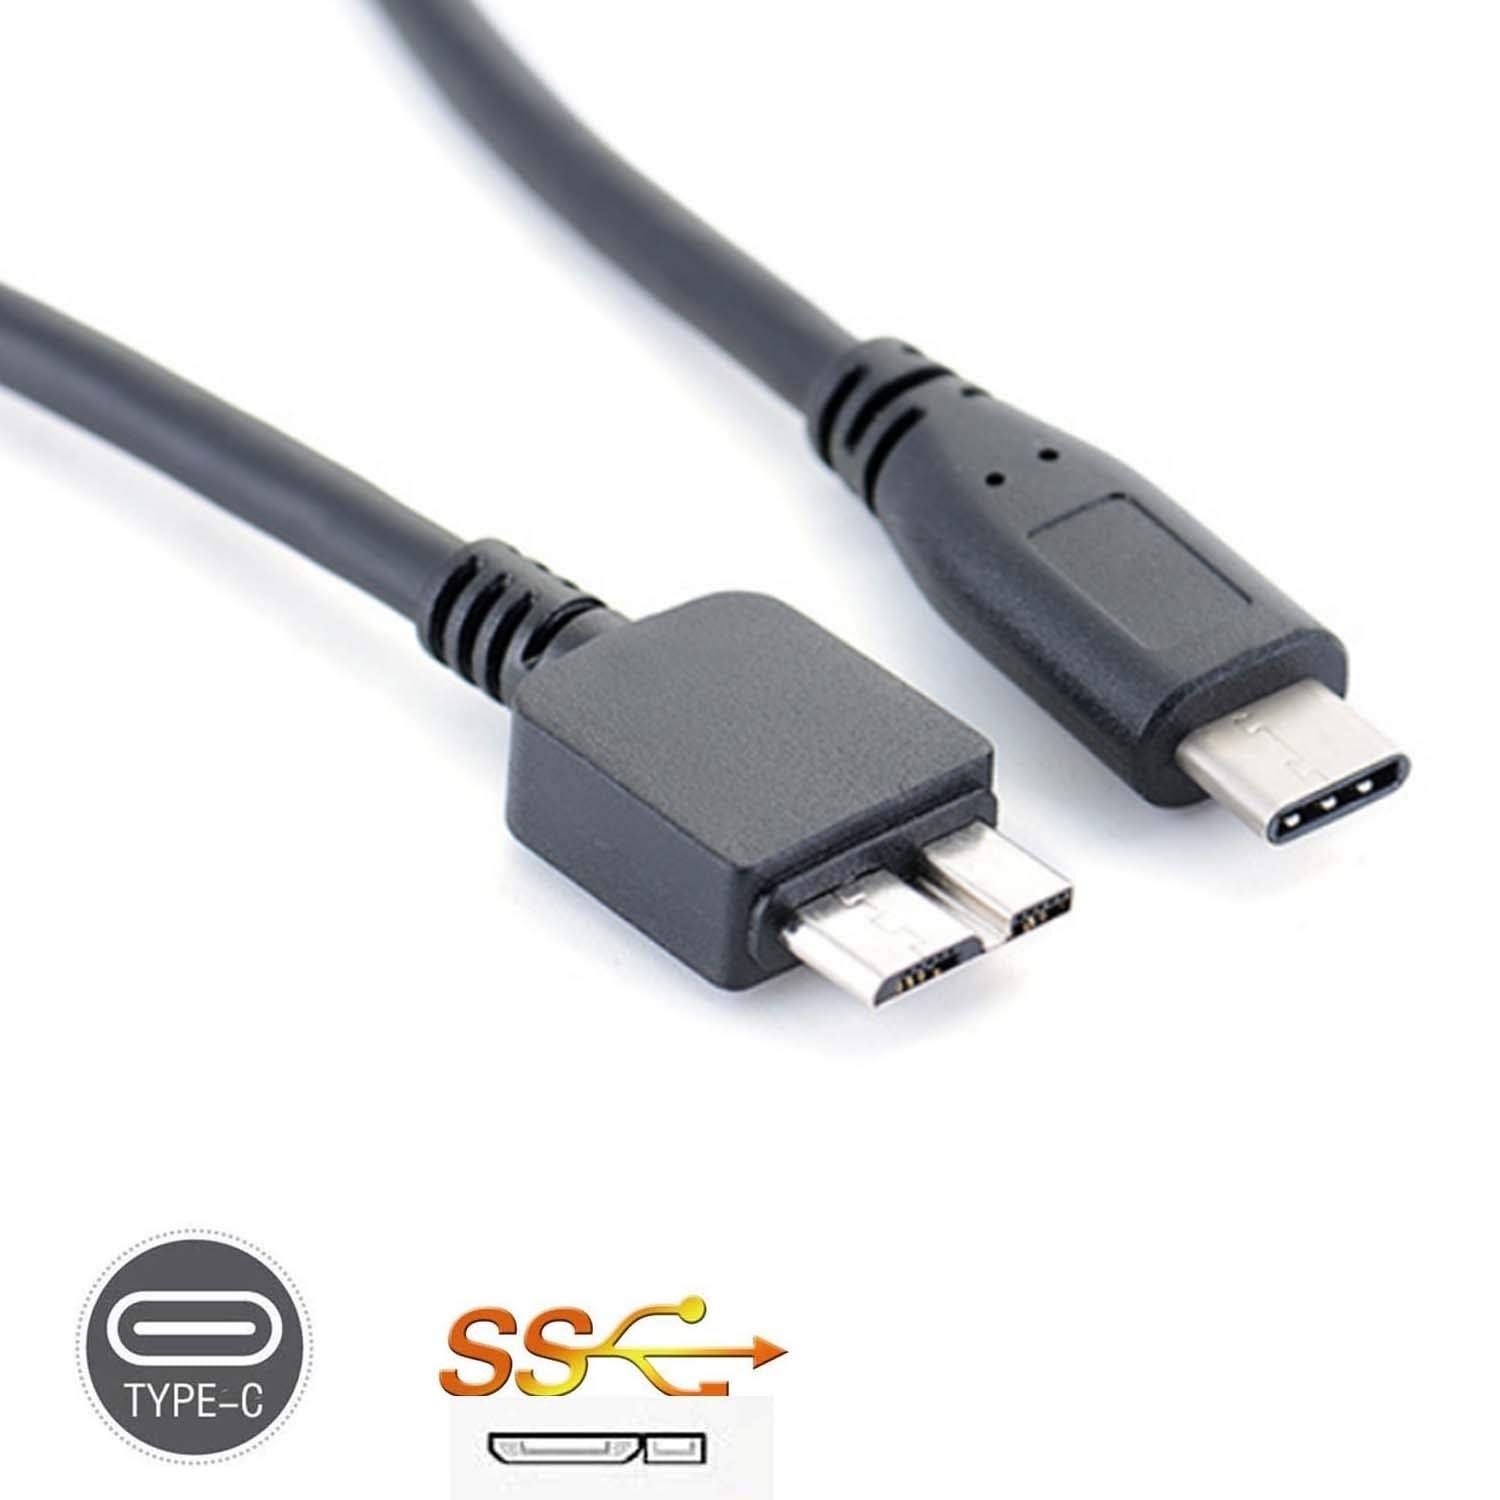 Regelmæssighed Til meditation Ledningsevne USB 3.0 to USB C 3.1 USB Cable for Seagate Backup Plus External Hard D –  Hellfire Trading